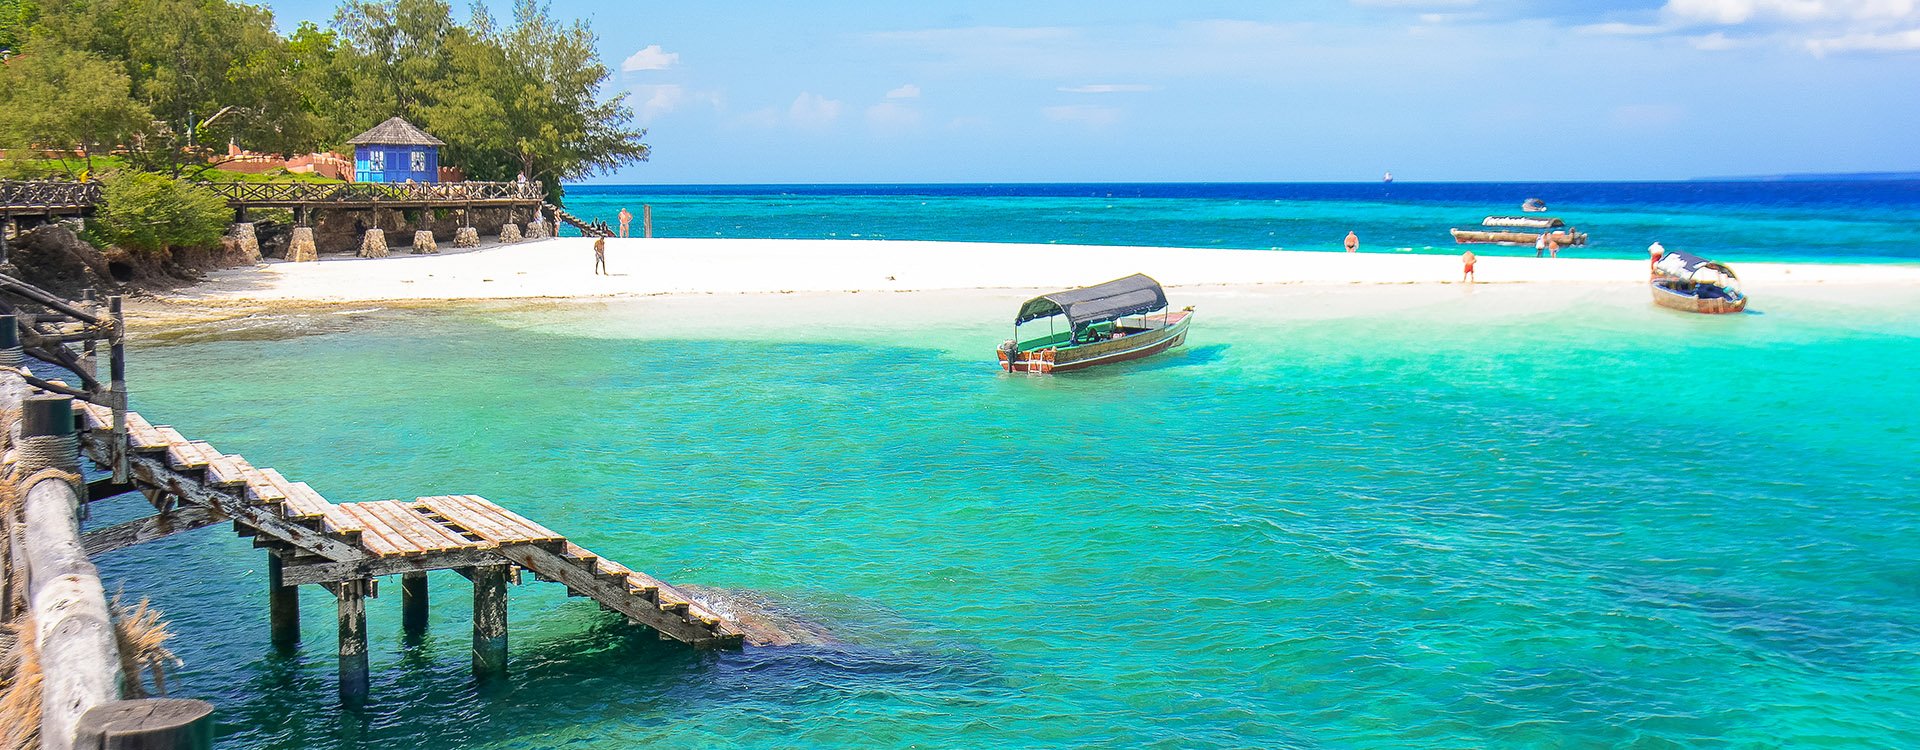 Changuu Island, Zanzibar